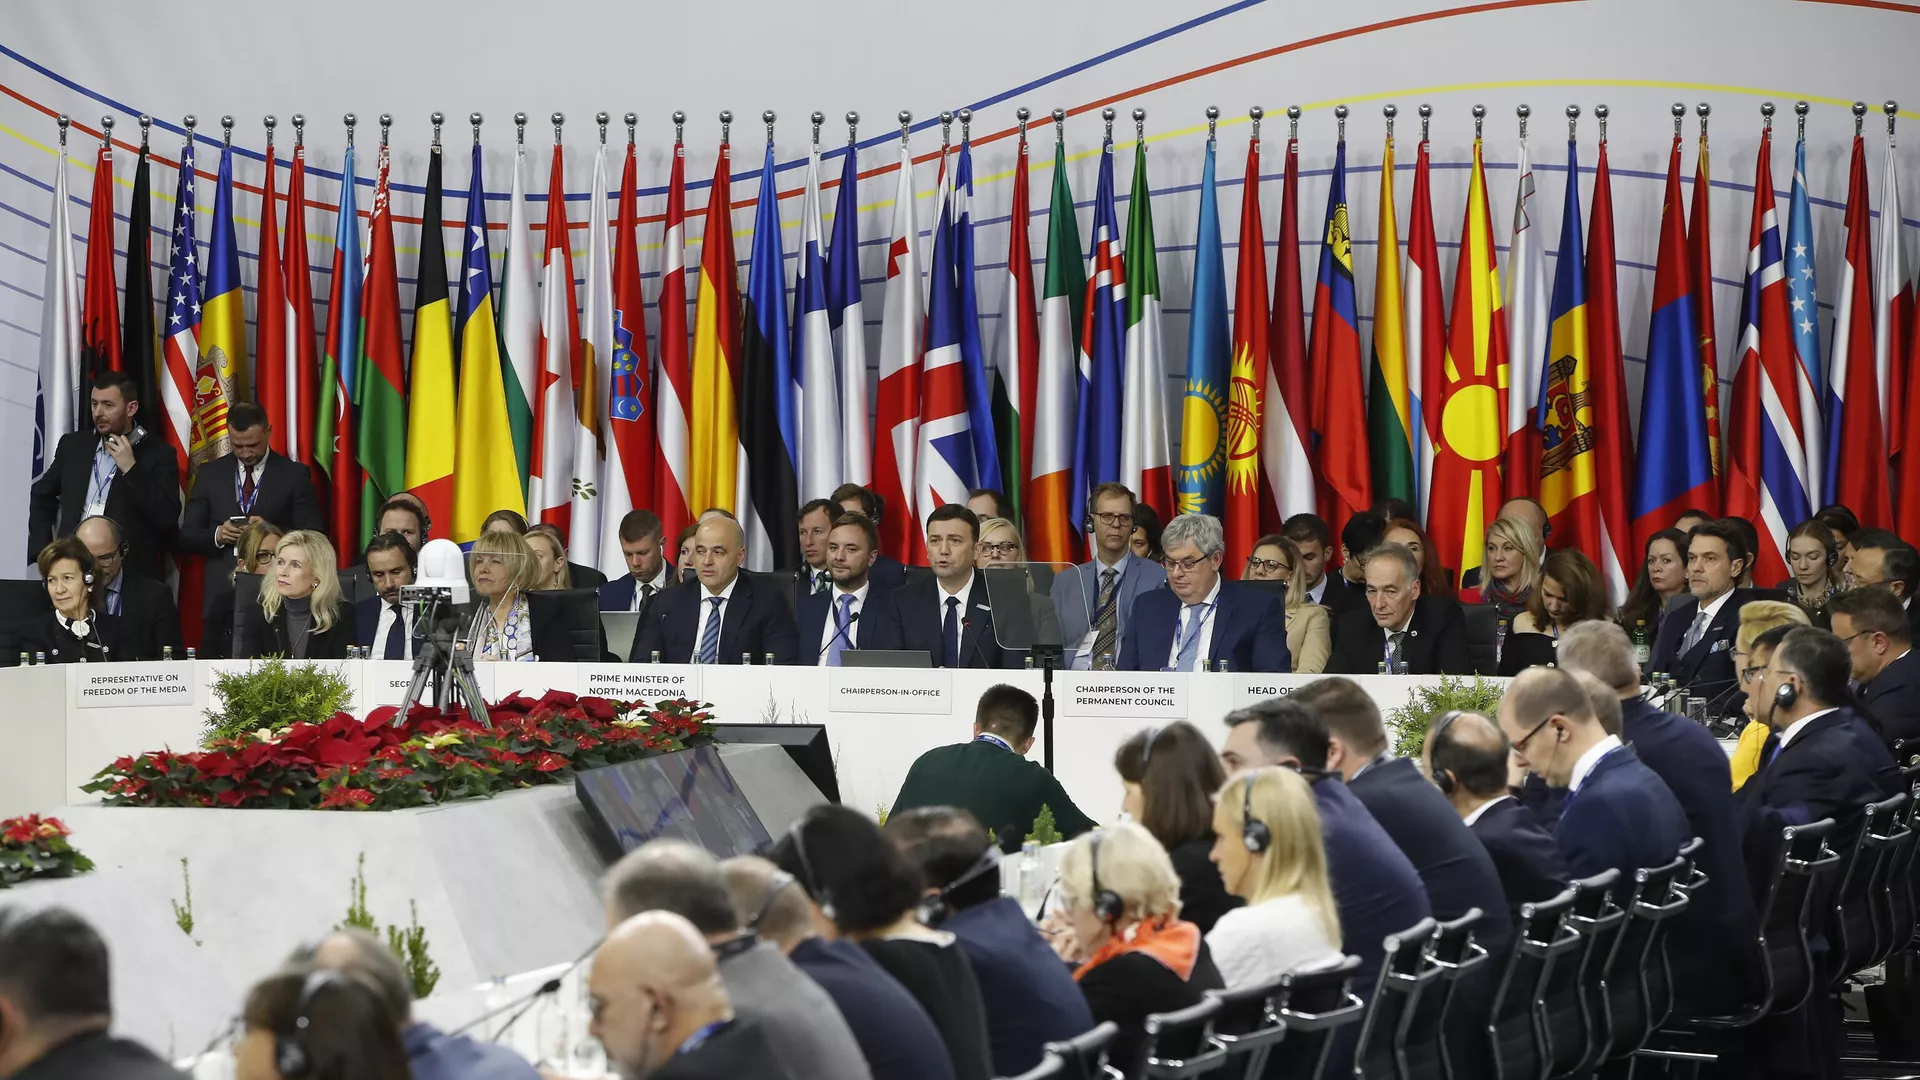 Дискуссия об исключении России из ОБСЕ исчерпала себя, заявил председатель